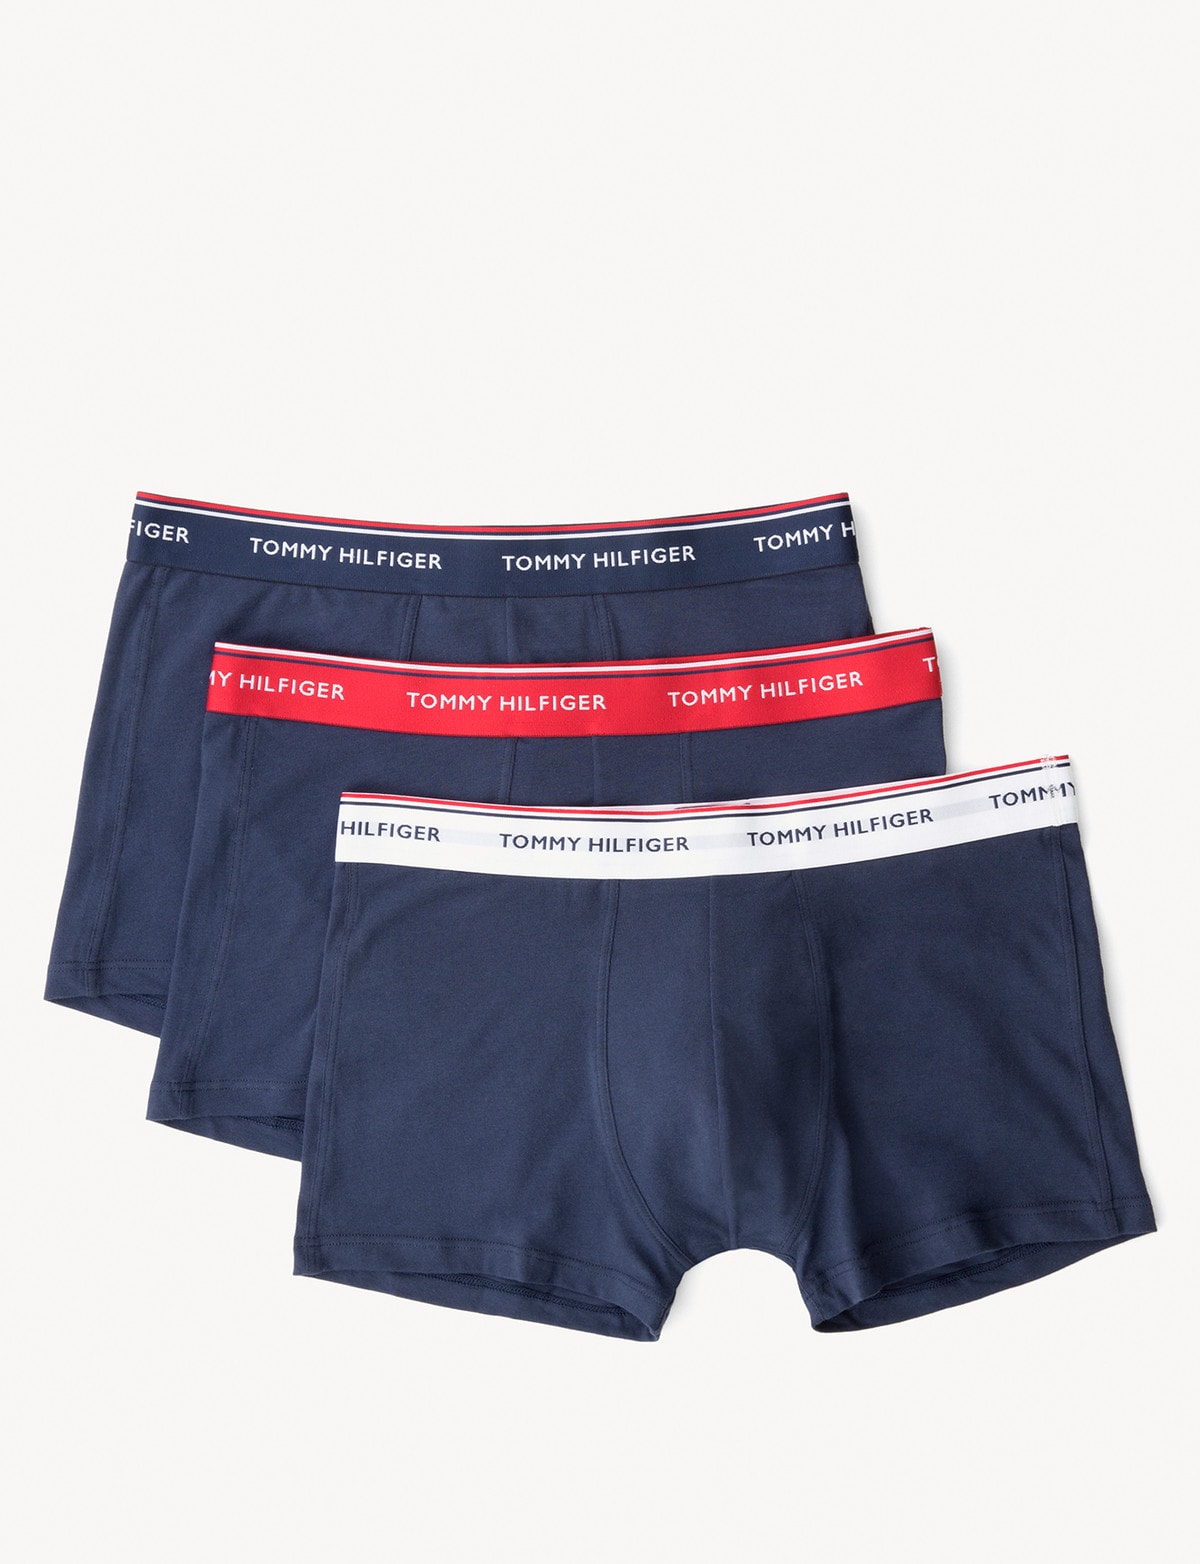 Tommy Hilfiger Underwear Underwear - JD Sports NZ